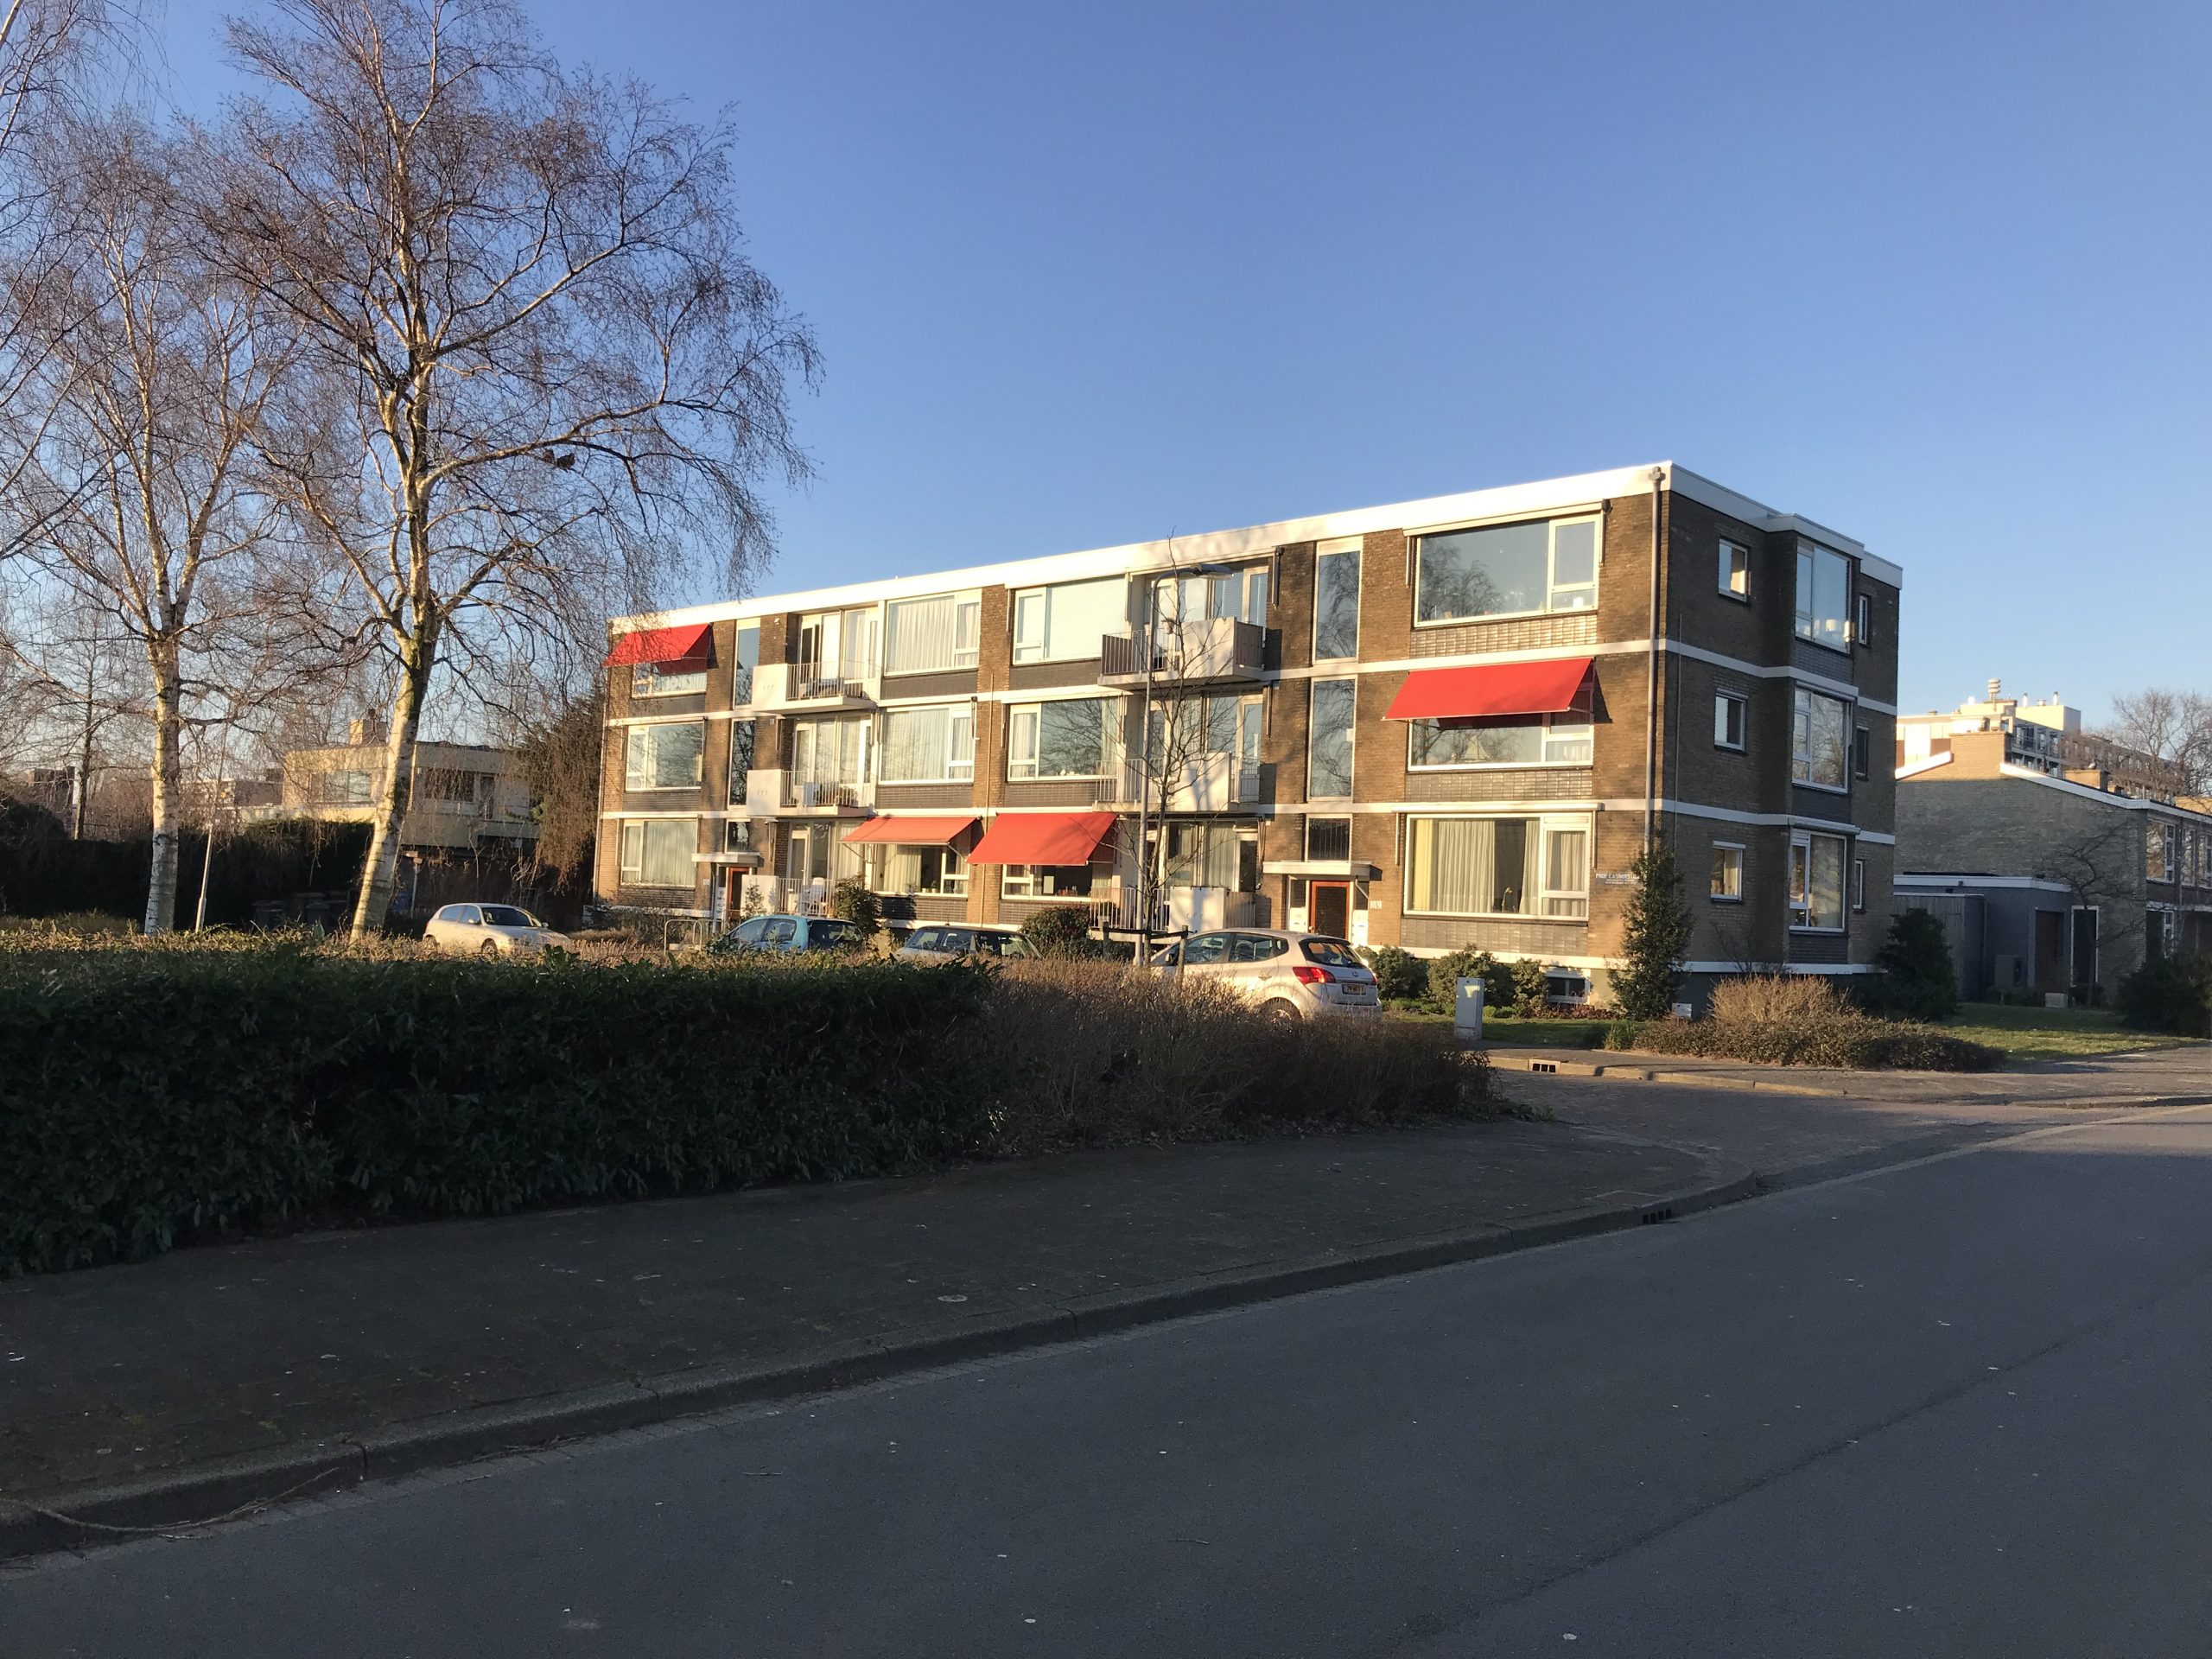 Top appartement in Voorburg binnenkort te koop bij SMASH makelaars